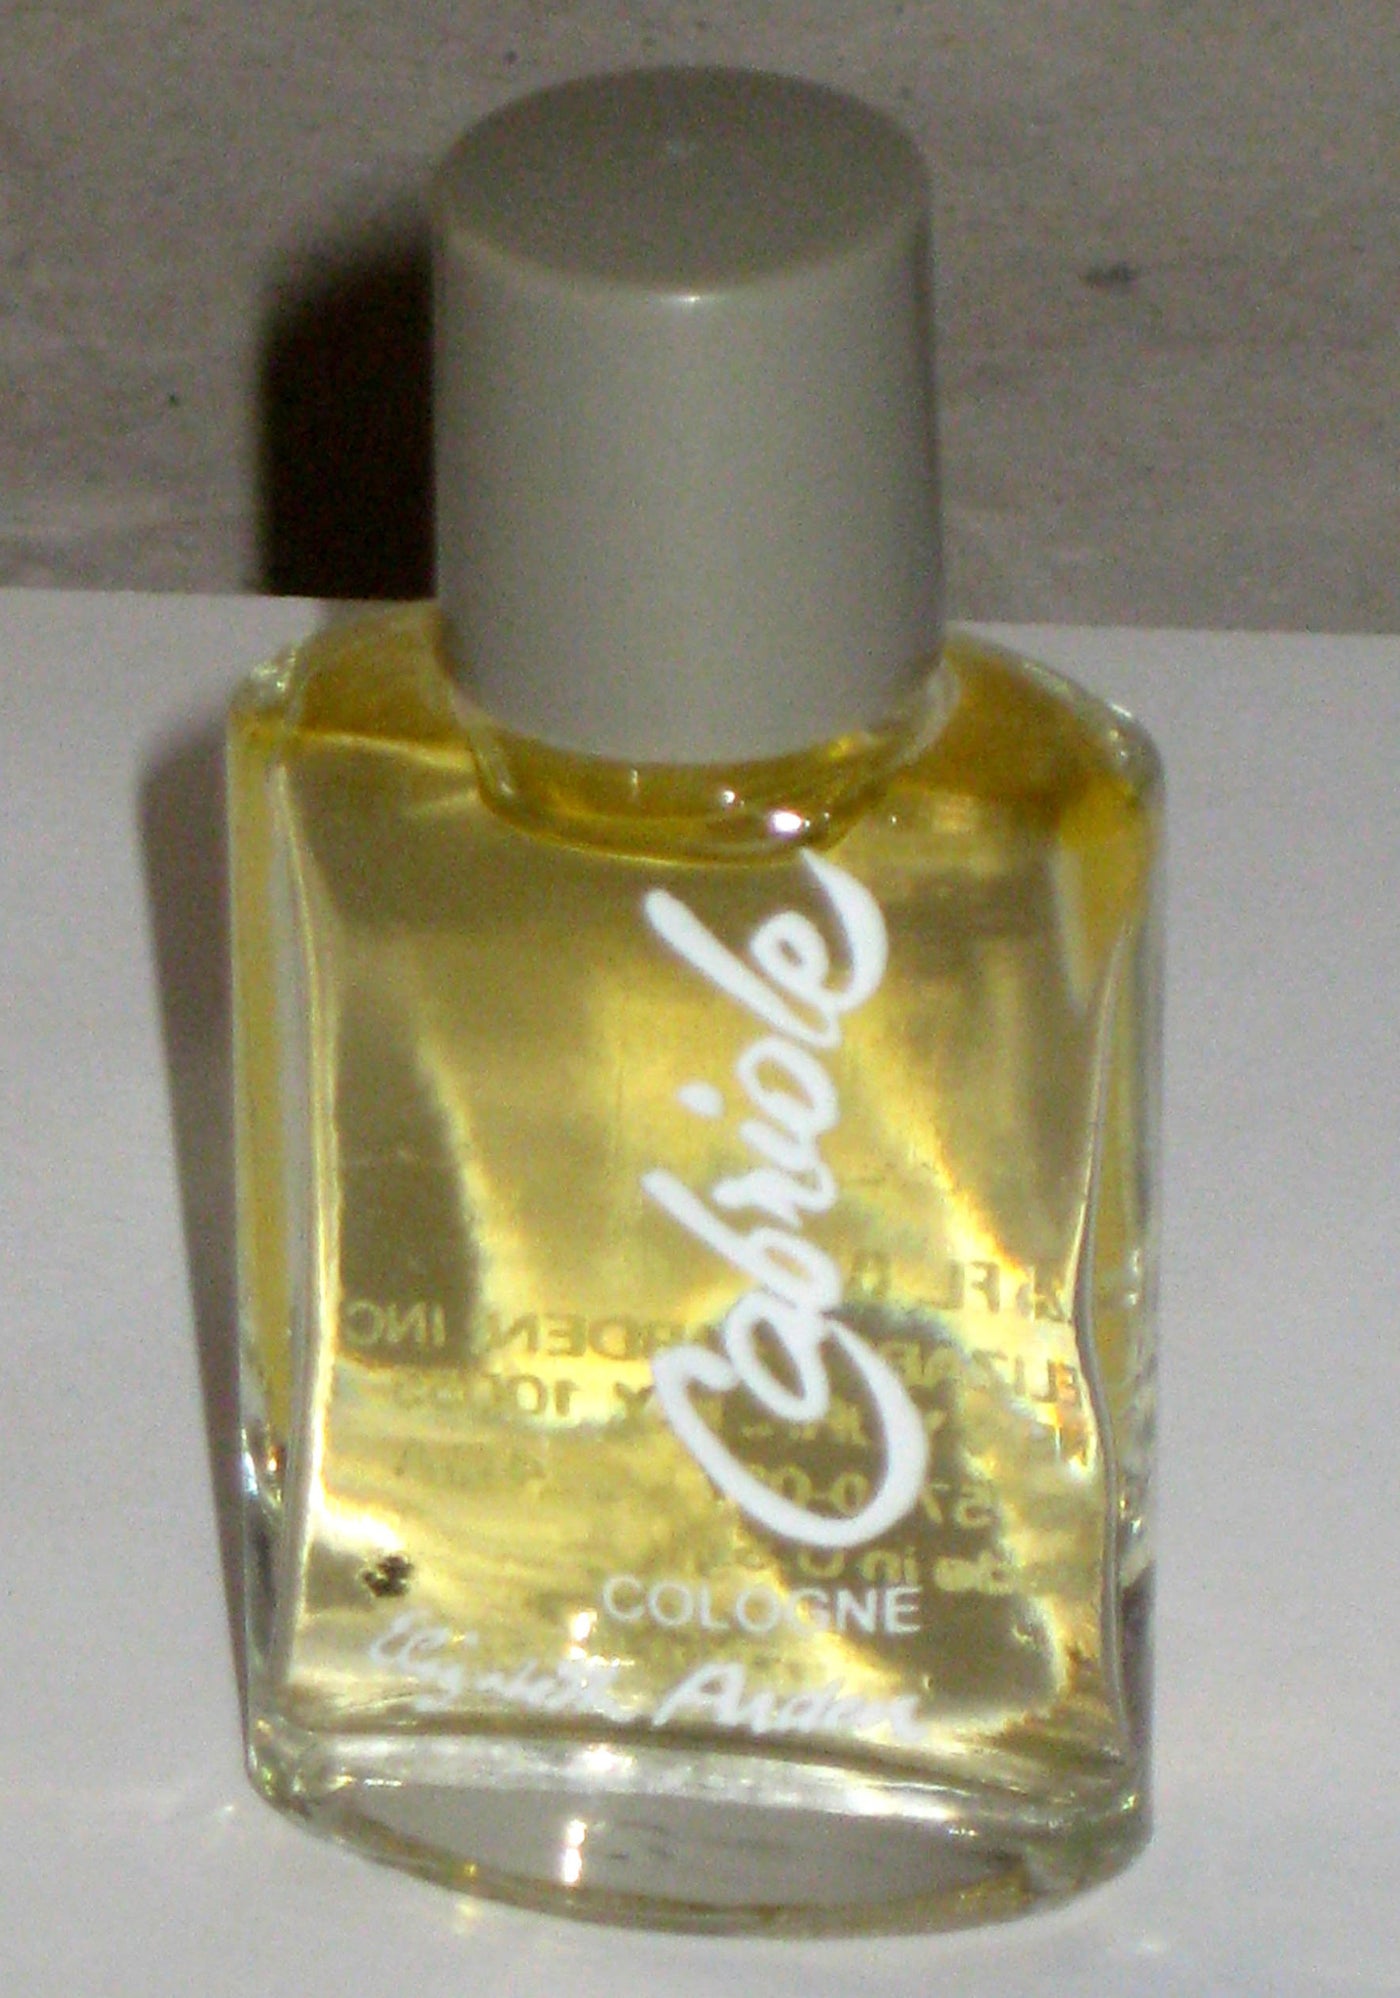 Elizabeth Arden Cabriole Cologne Mini